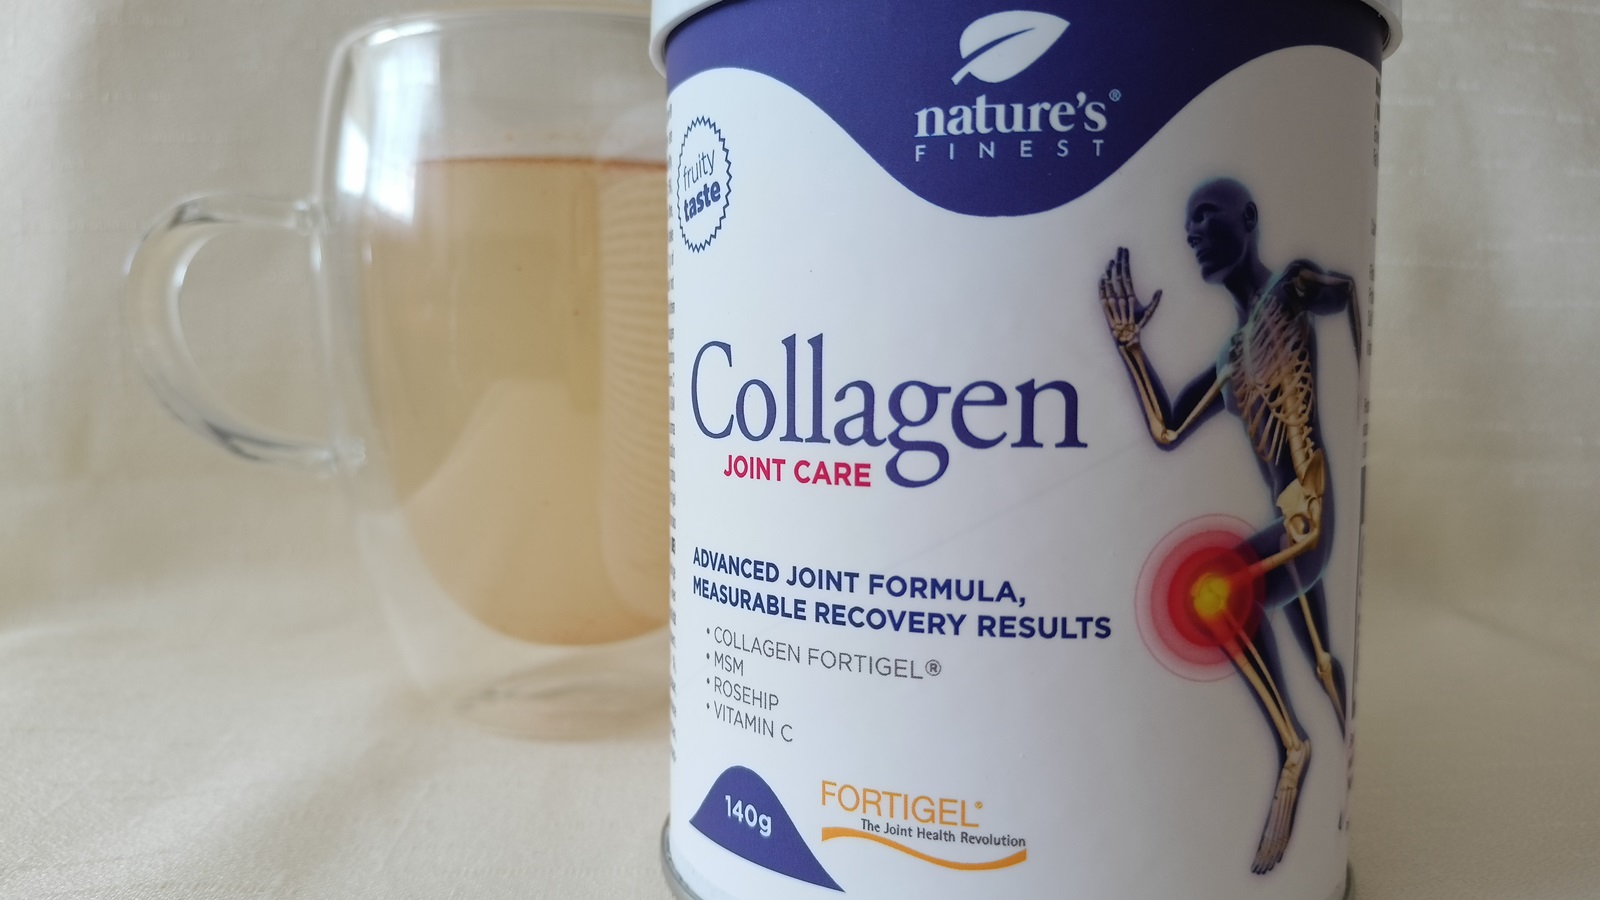 Recenze: Vyzkoušeli jsme Collagen Joint Care od Nature’s Finest